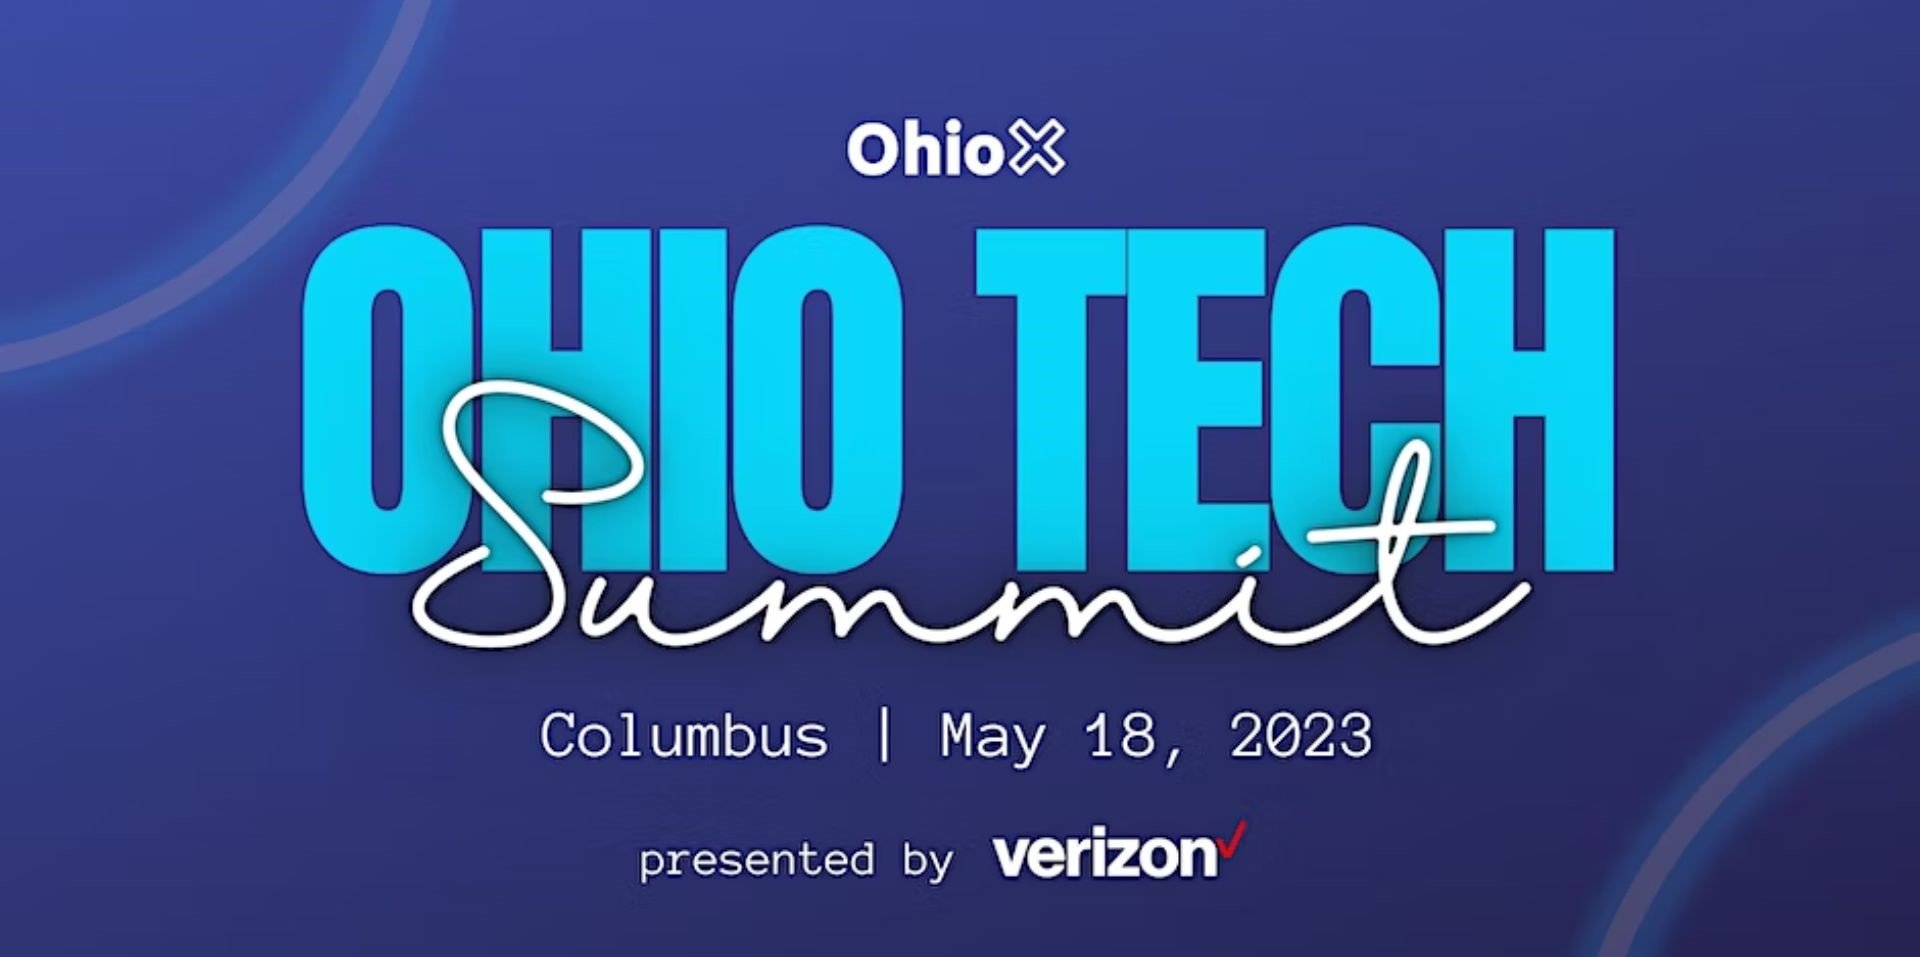 Ohio Tech Summit